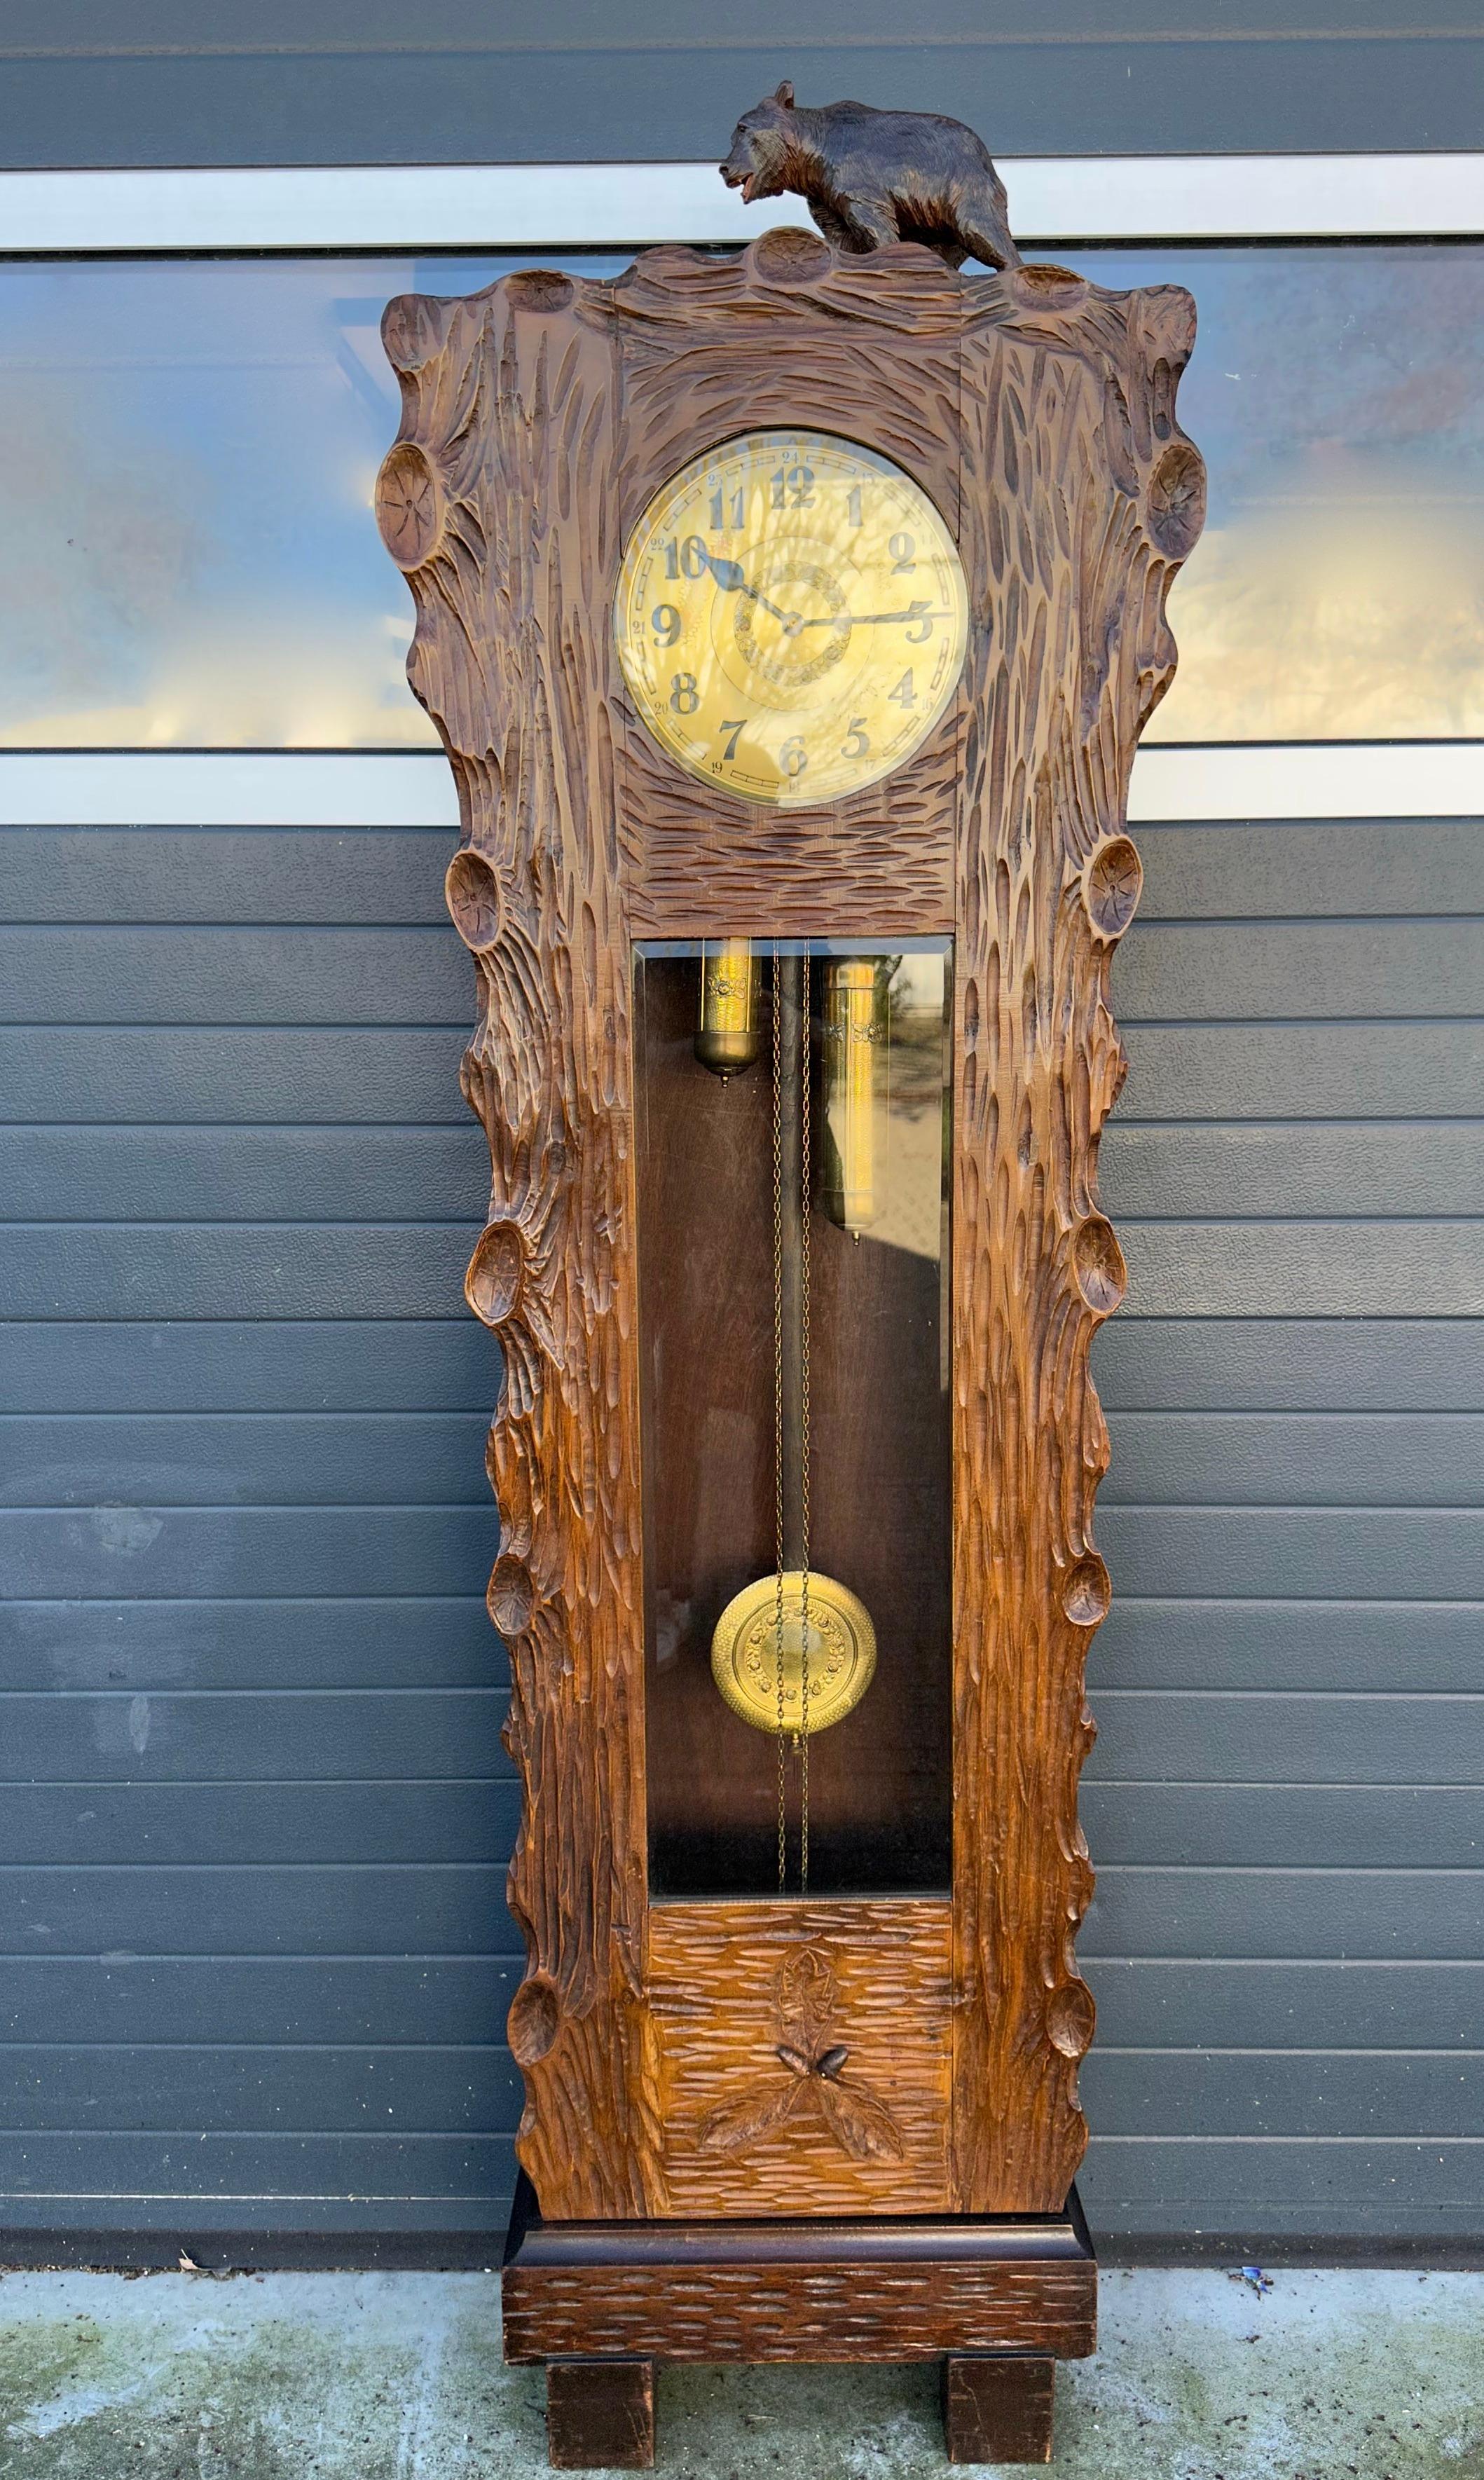 Wunderschöne Uhr für die Sammler von sehr seltenen und wirklich stilvollen Schwarzwälder Antiquitäten.

Baumstamm Design Standuhren sind eine seltene Entdeckung und diese 6,5 Meter hoch Exemplar könnte kaum in besserem Zustand sein. Diese in der